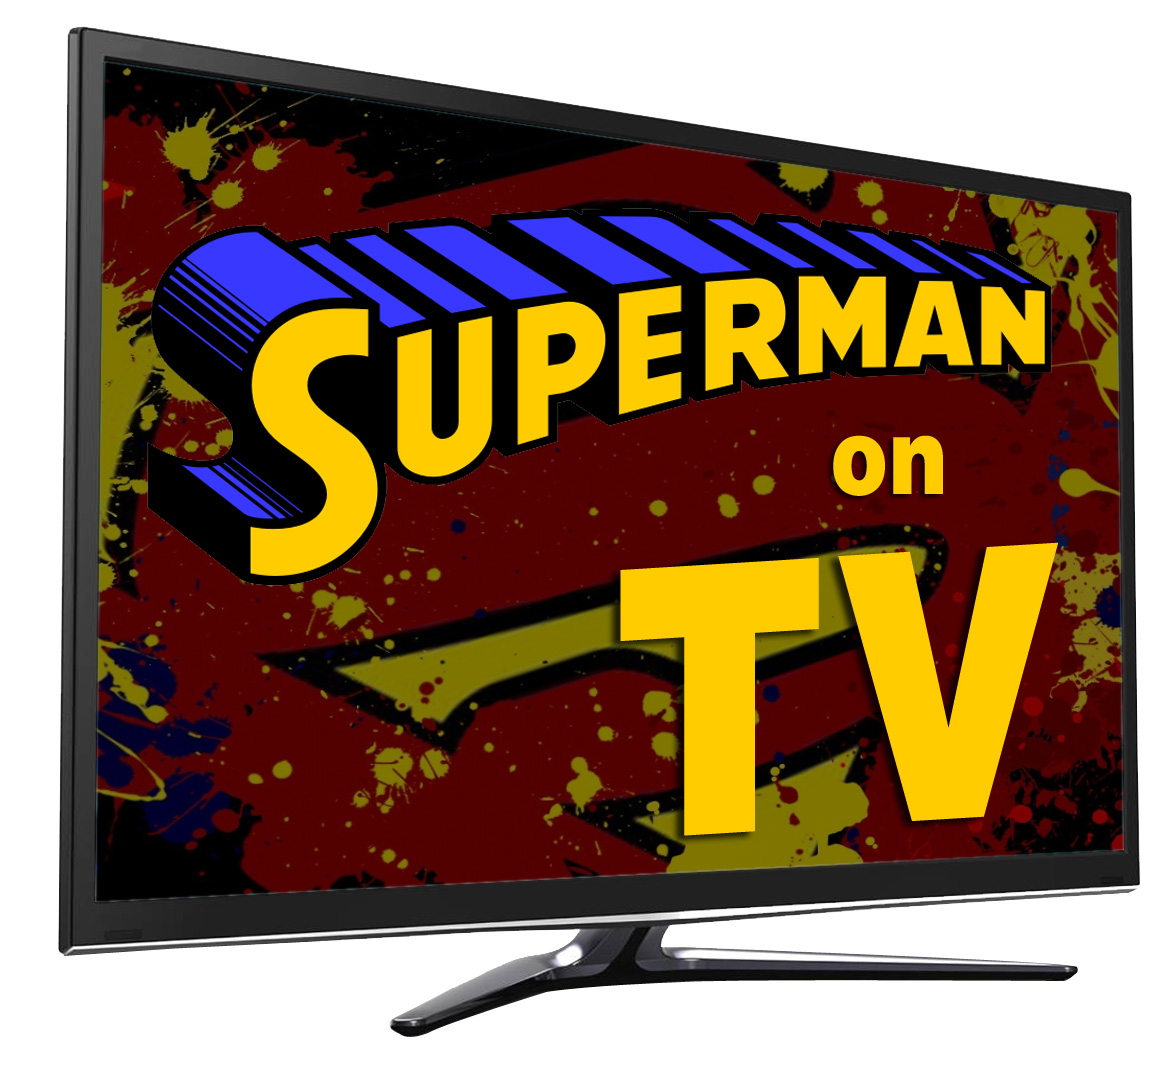 Superman on TV